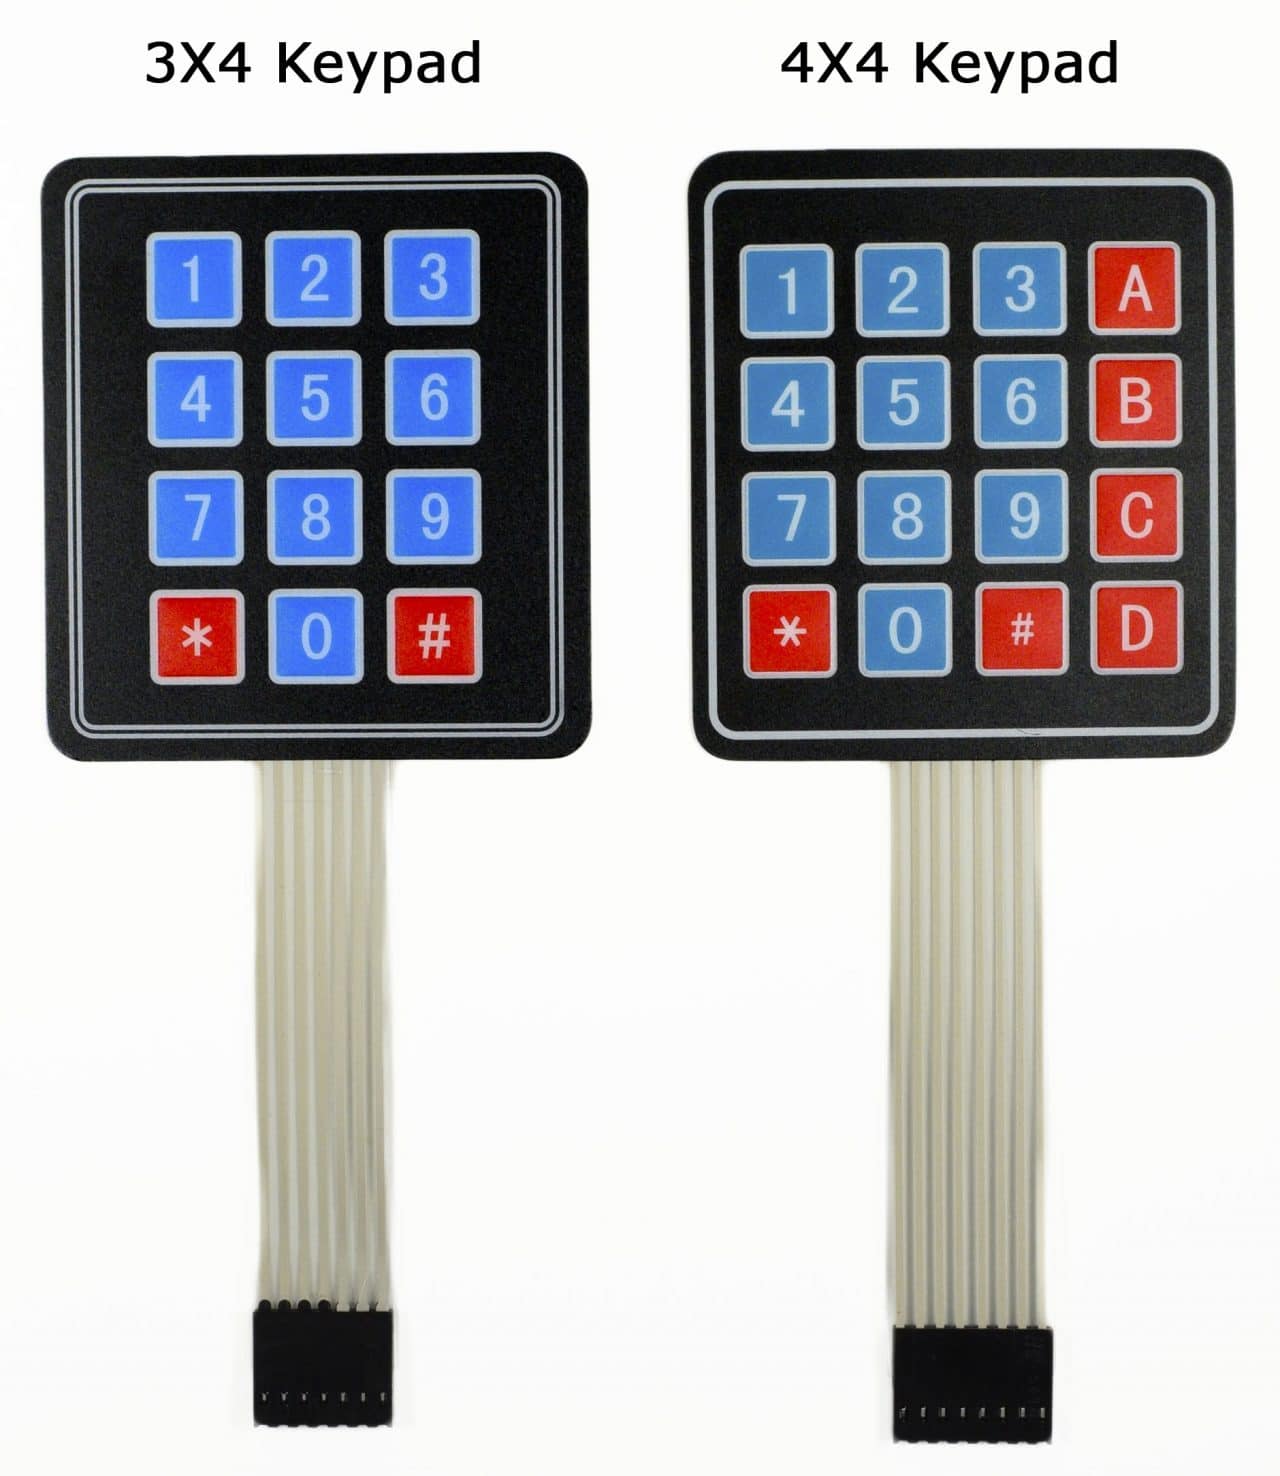 Arduino Keypad Tutorial - 3X4 and 4X4 Keypads